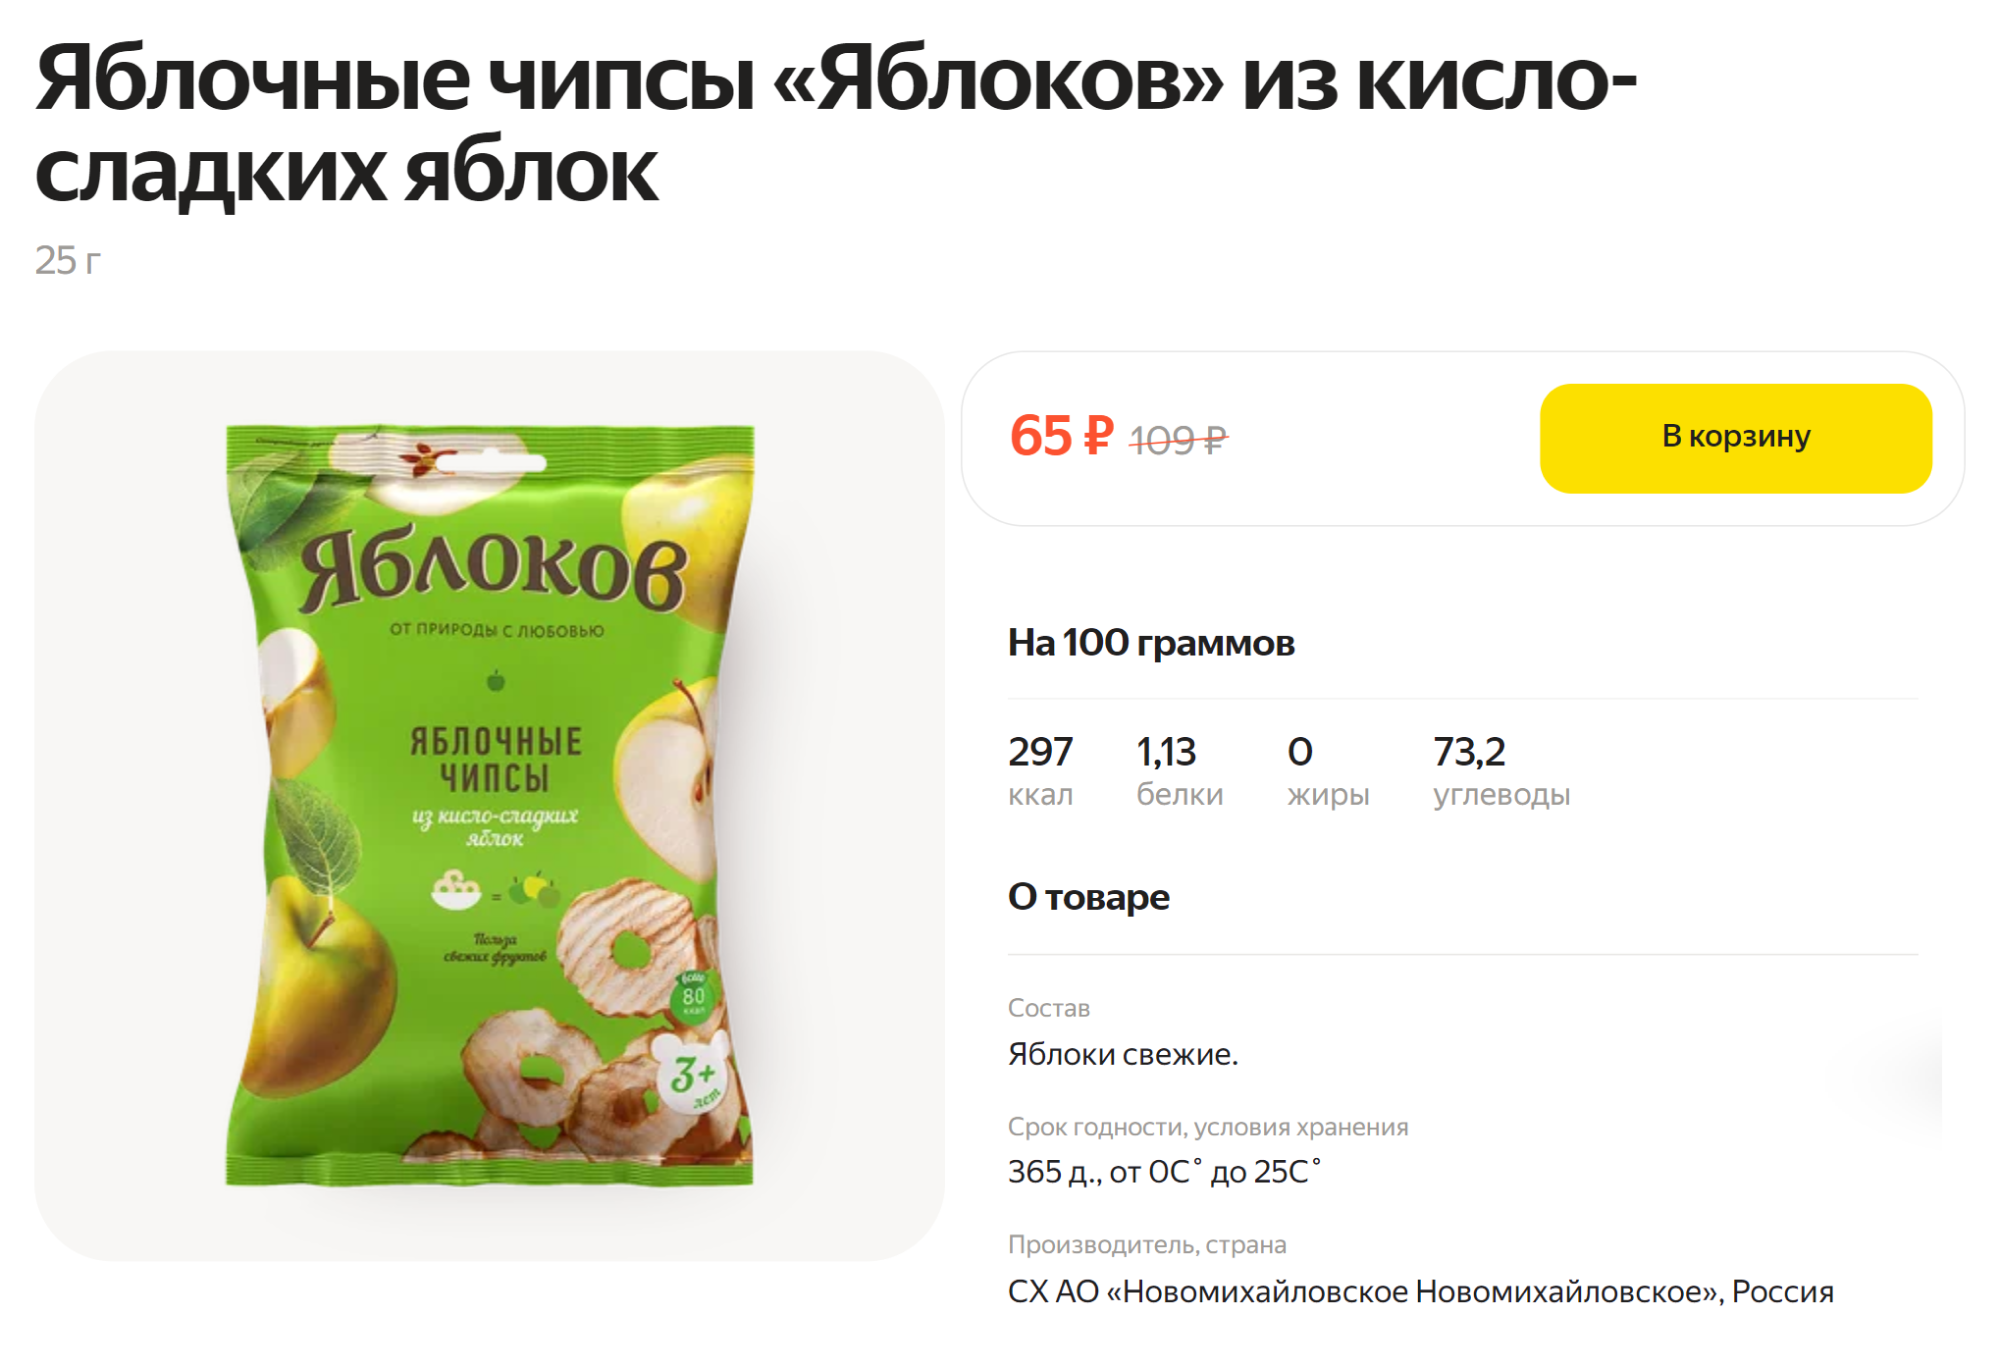 В этих чипсах нет ничего, кроме яблок, — можно брать, если избегаете сахара. Источник: lavka.yandex.ru